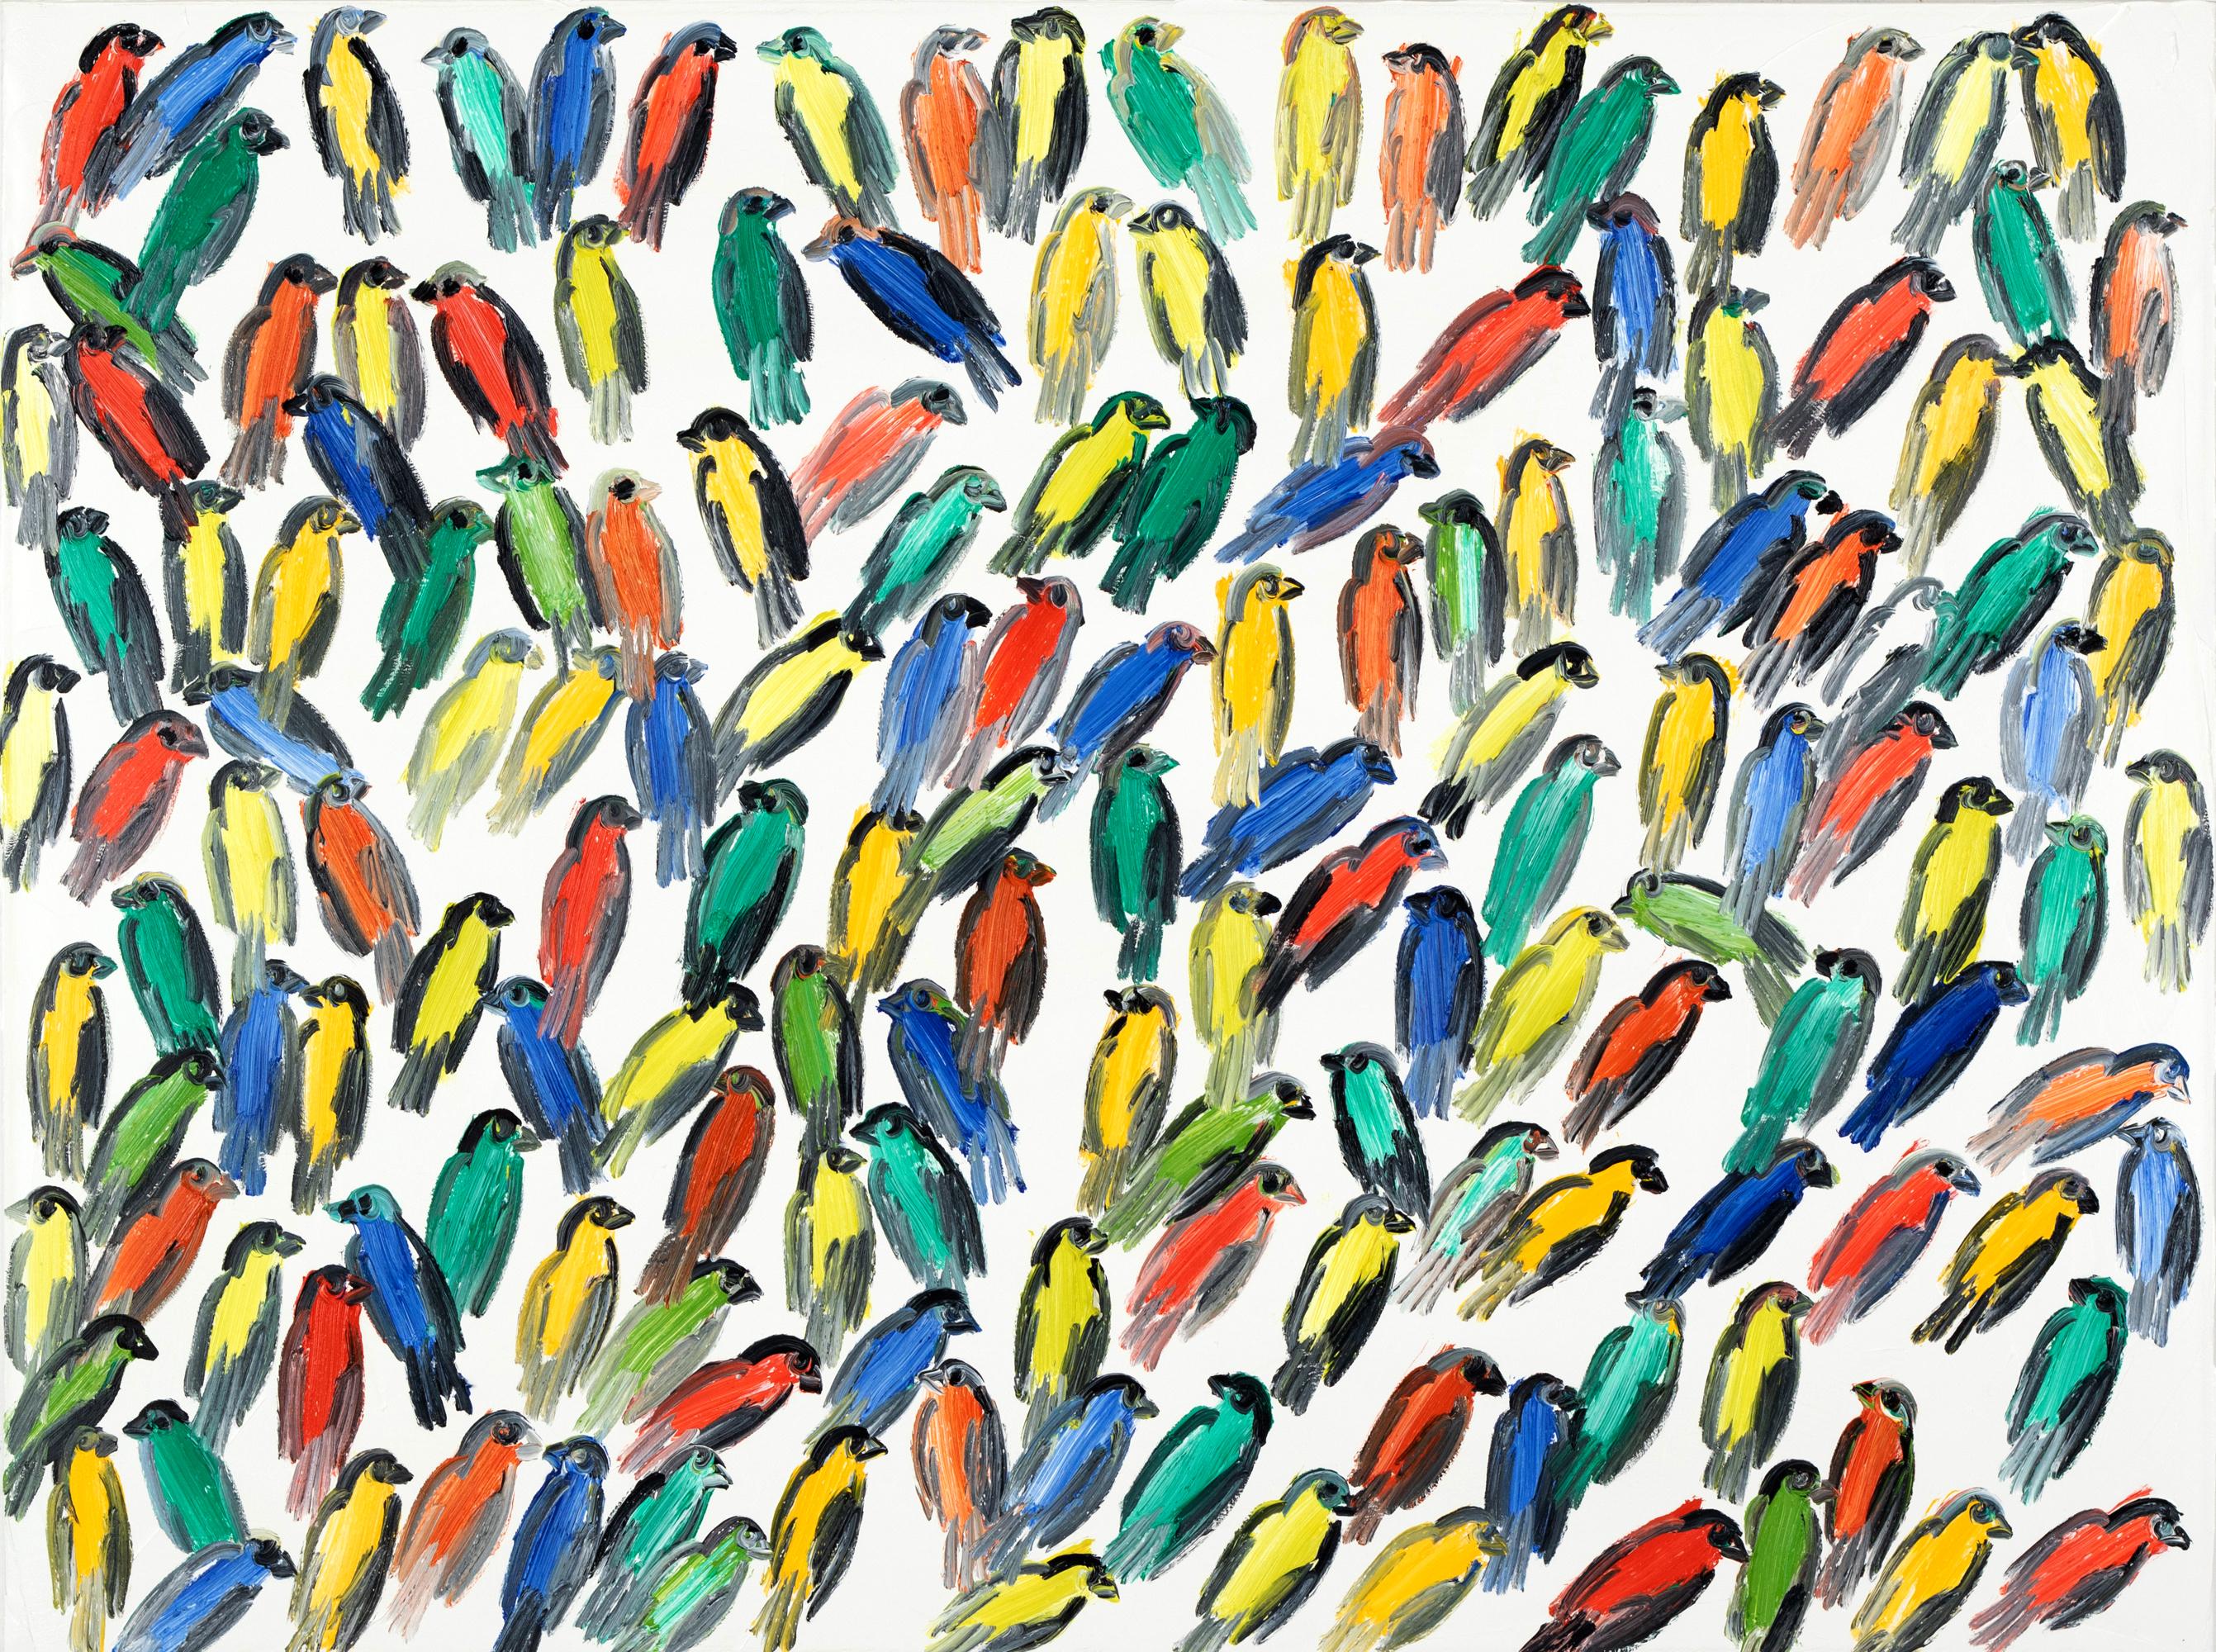 Peinture à l'huile sur toile « Fives », oiseaux multicolores avec fond blanc